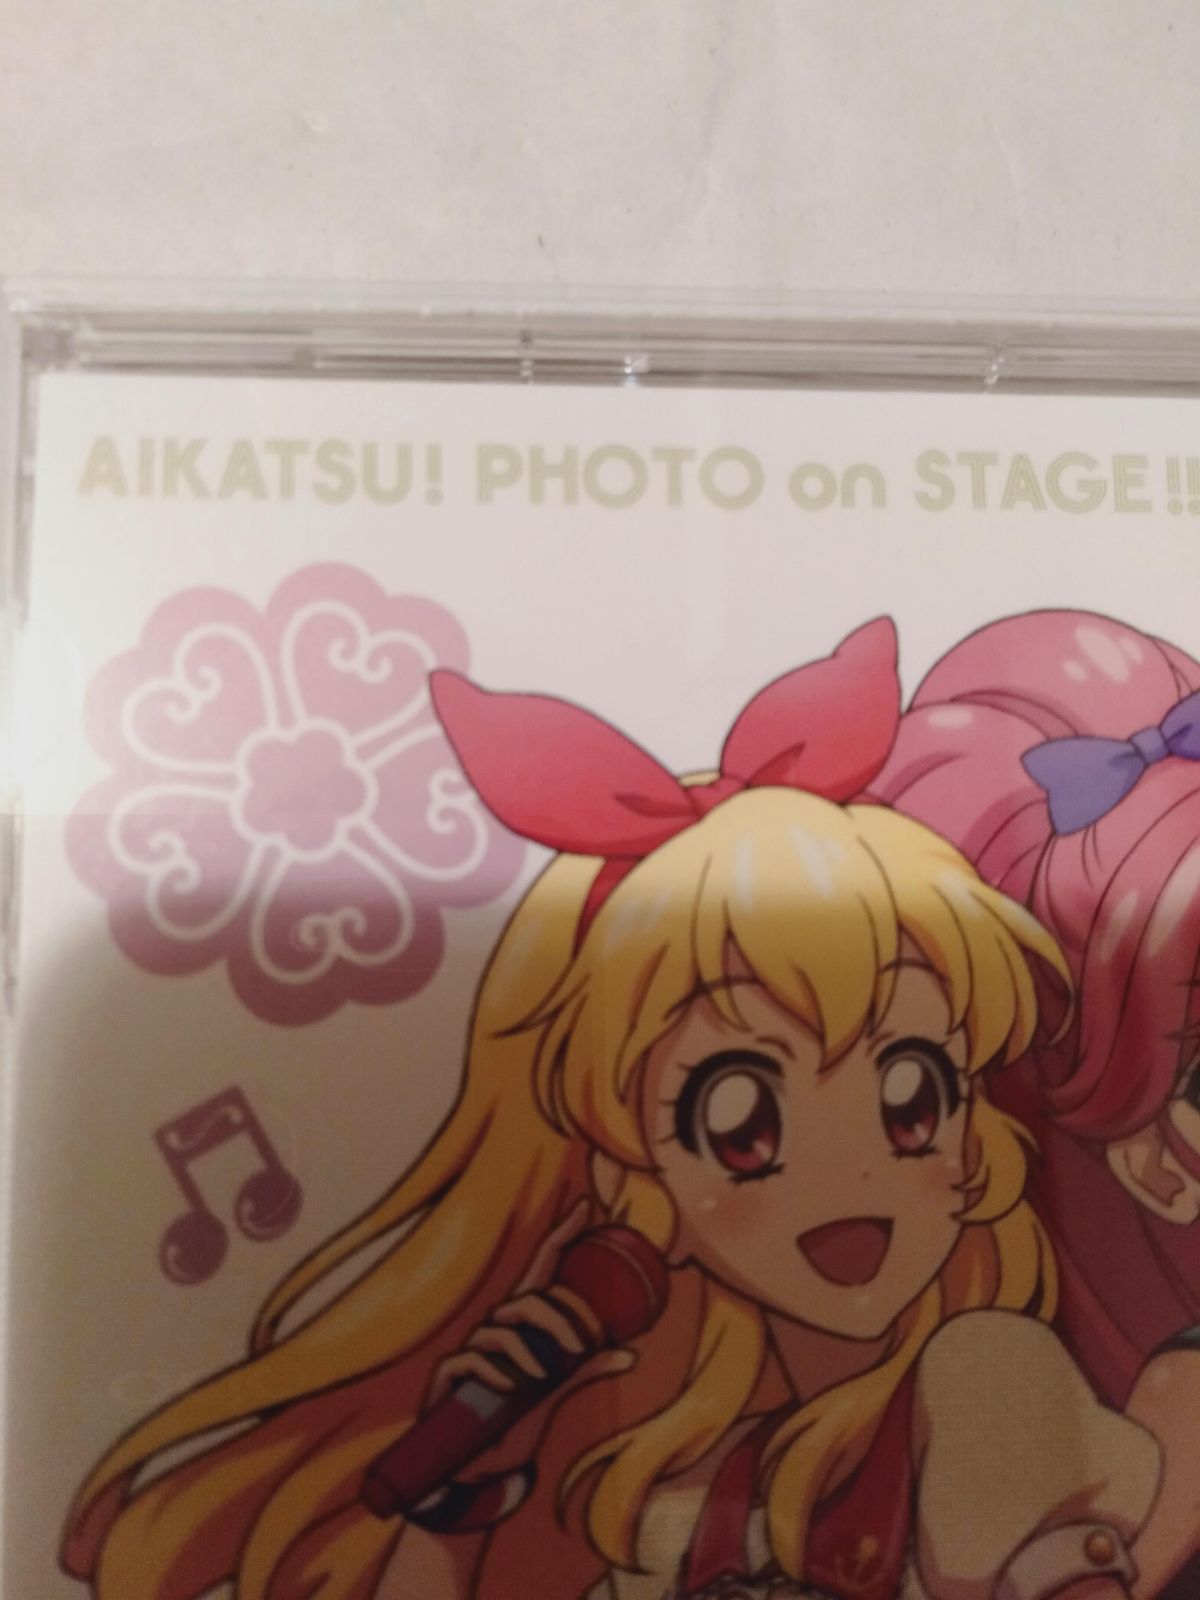 CD】スマホアプリ「アイカツ!フォトonステージ!!」シングルシリーズ01